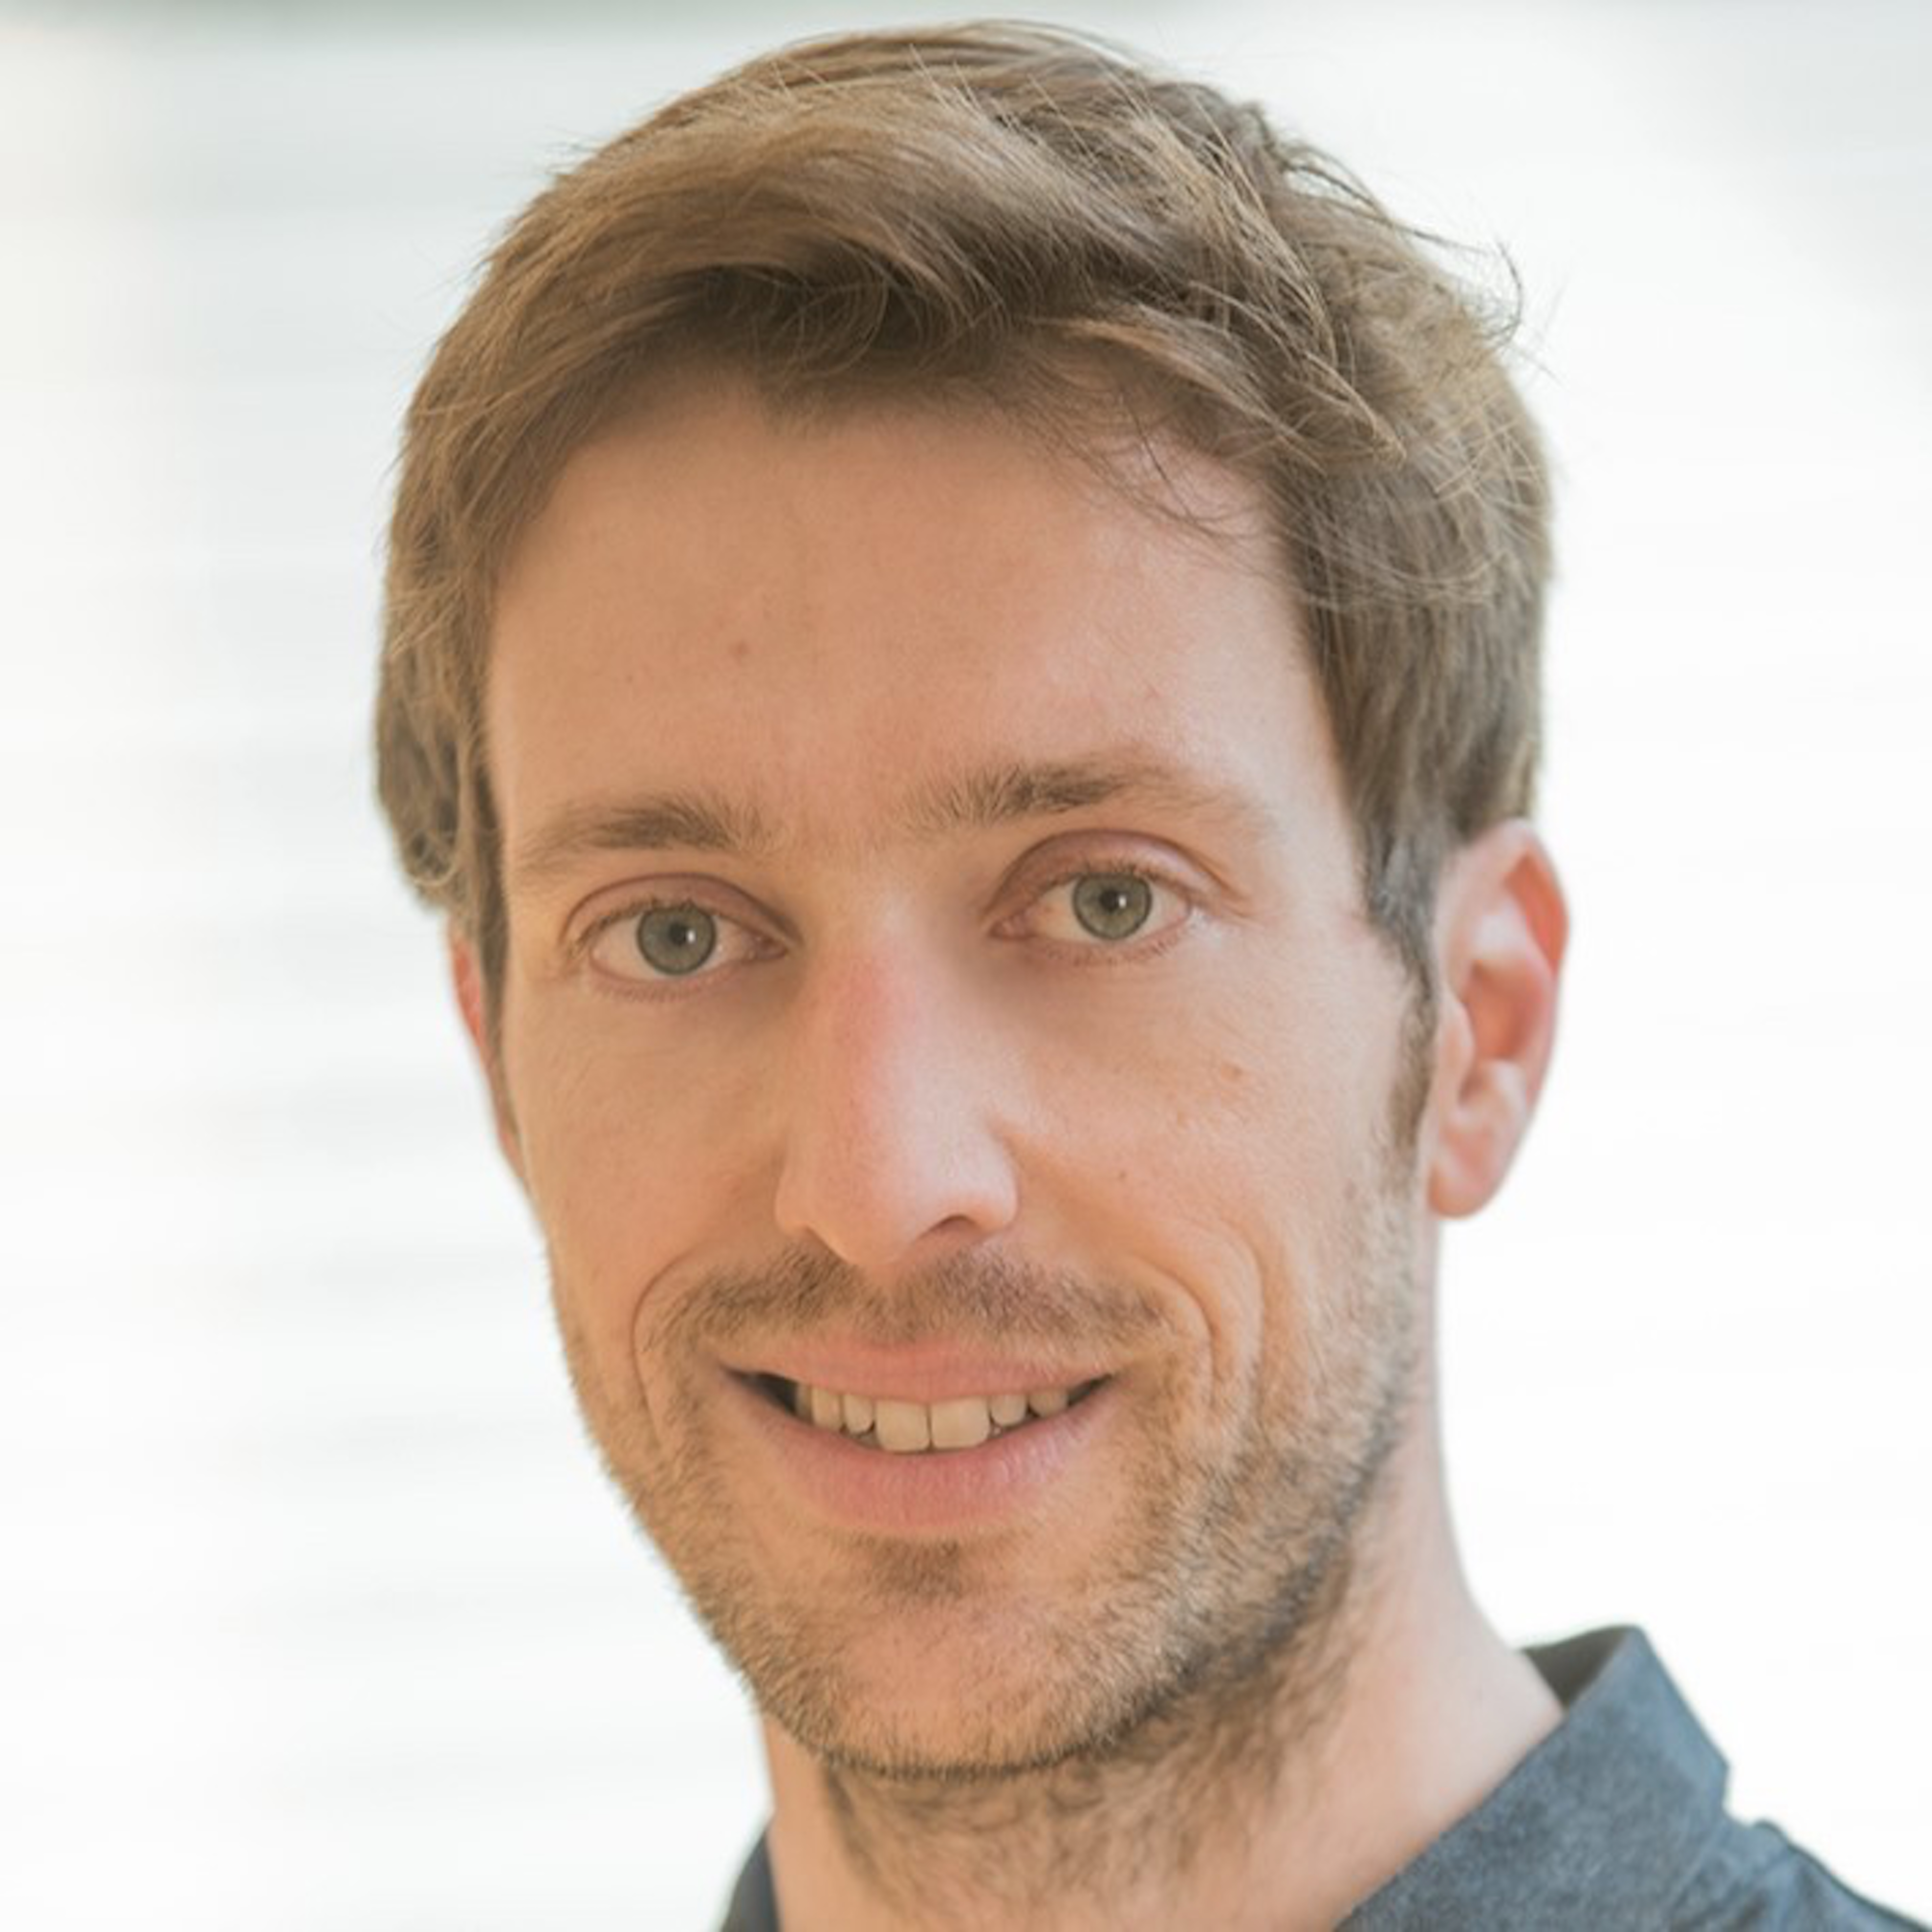 Markus Wettstein, catedrático de la Universität Heidelberg de Alemania, lidera el Departamento de Investigación sobre el Envejecimiento Psicológico, Network Aging Research y es parte activa del Instituto Alemán de Gerontología